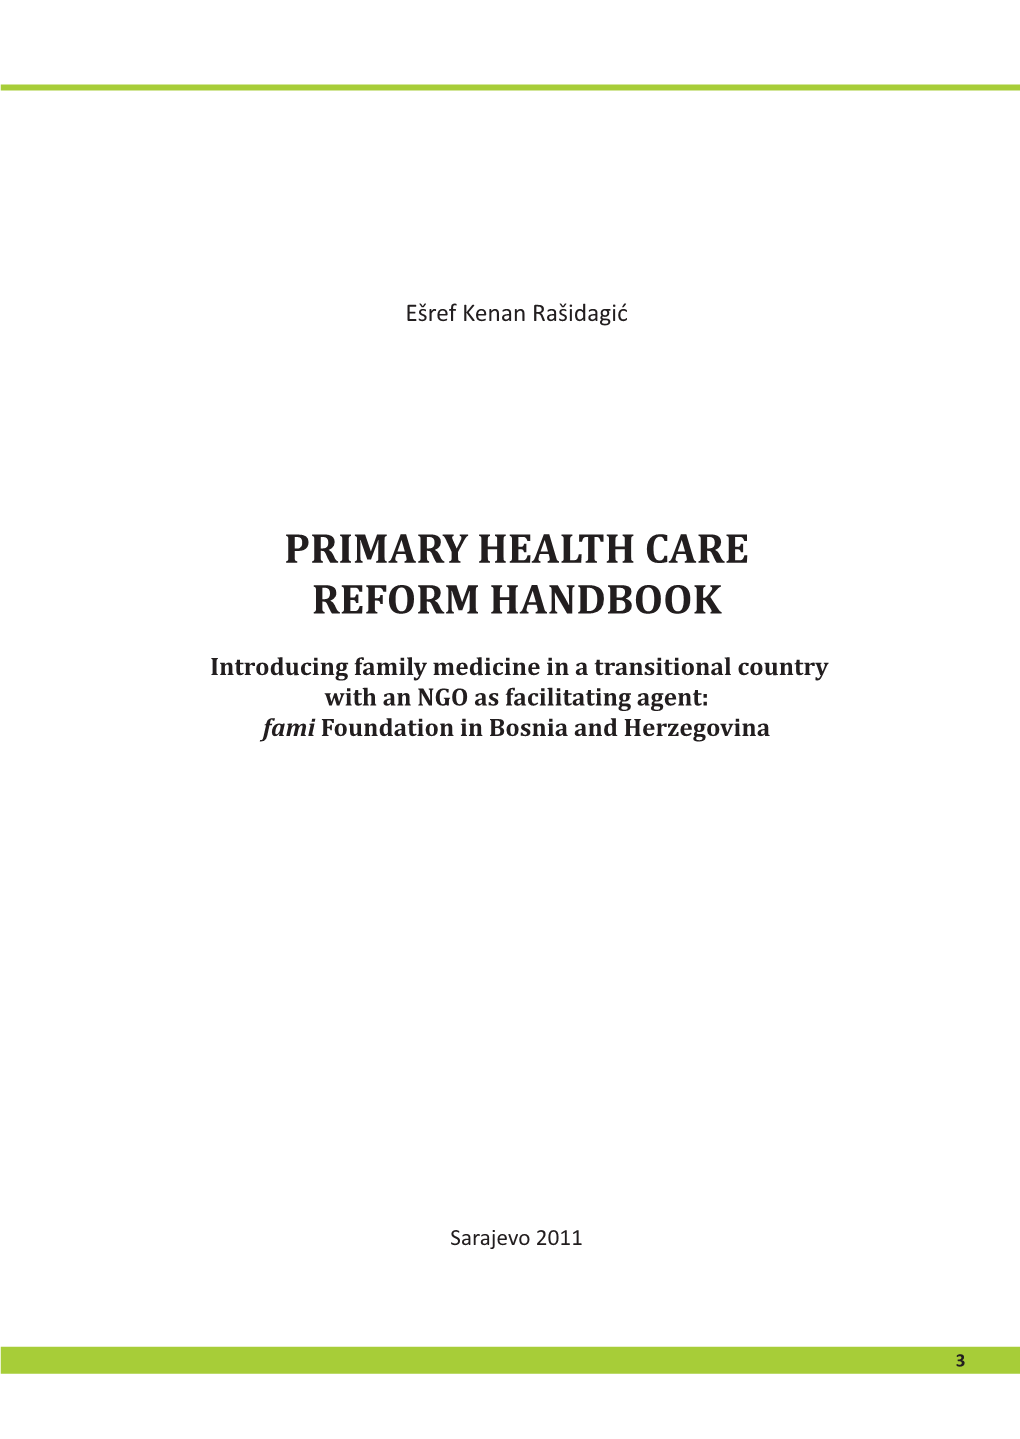 Primary Health Care Reform Handbook